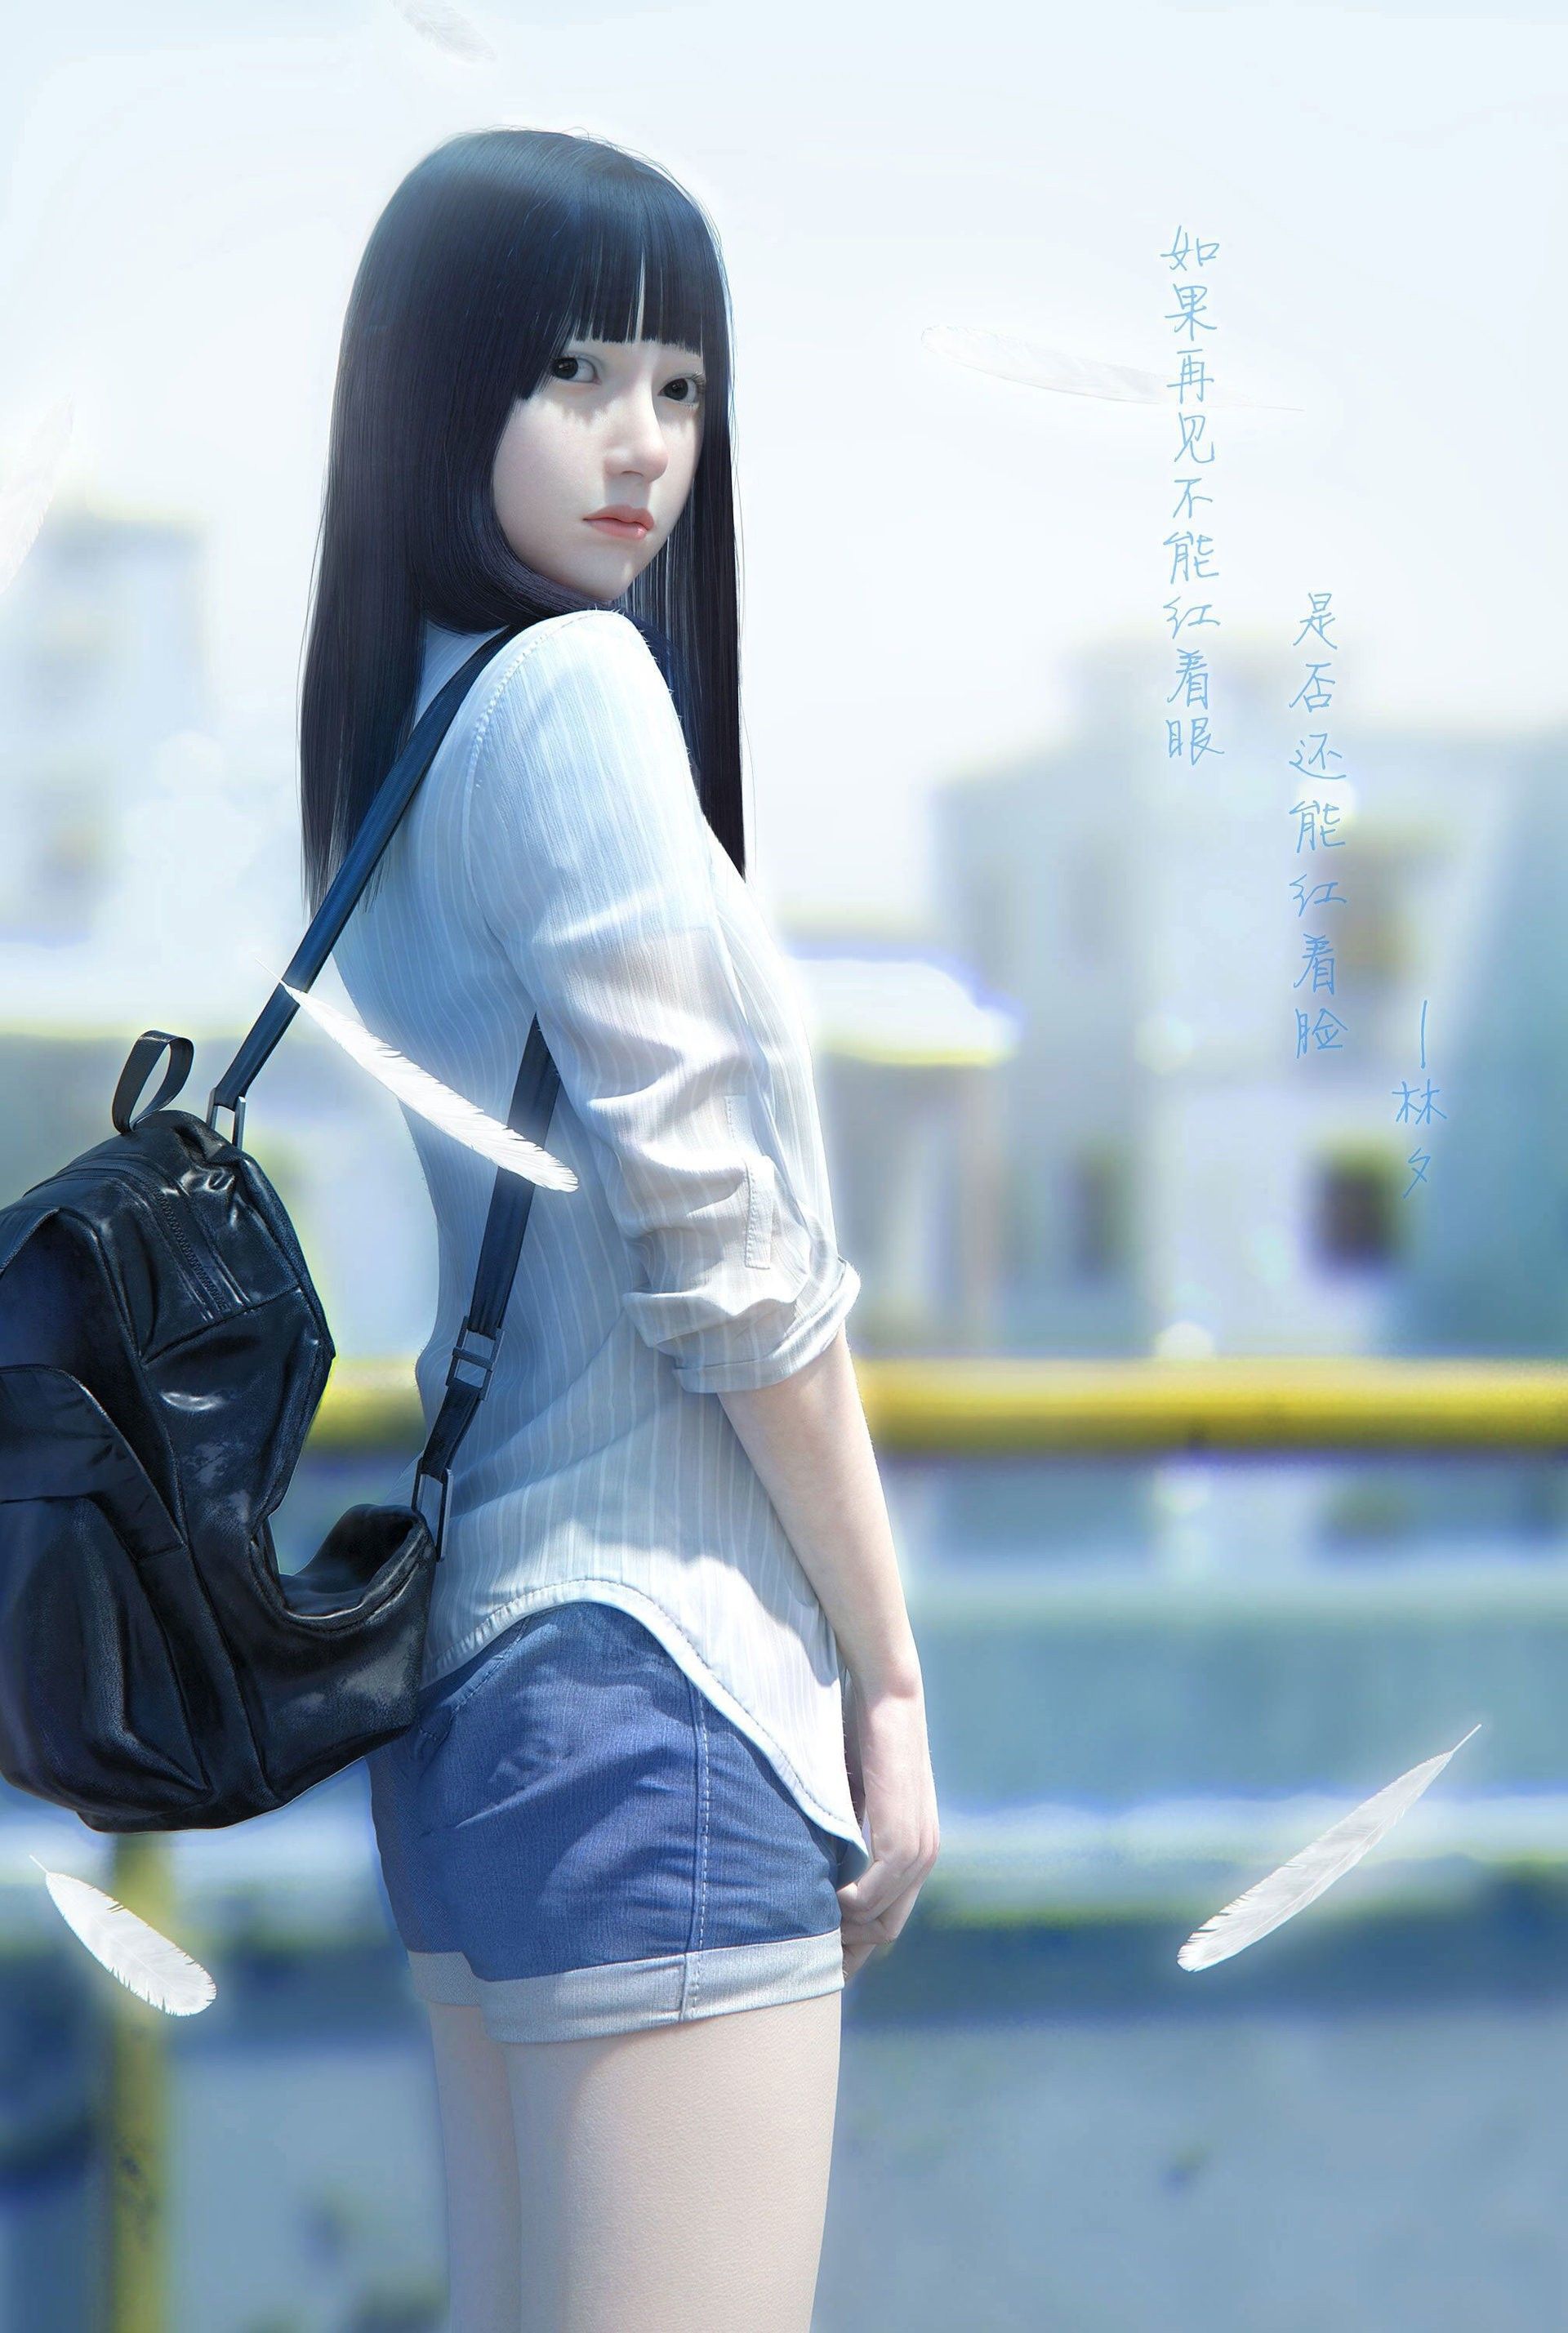 Tổng hợp 888 Wallpaper 3d anime girl Miễn phí tải về